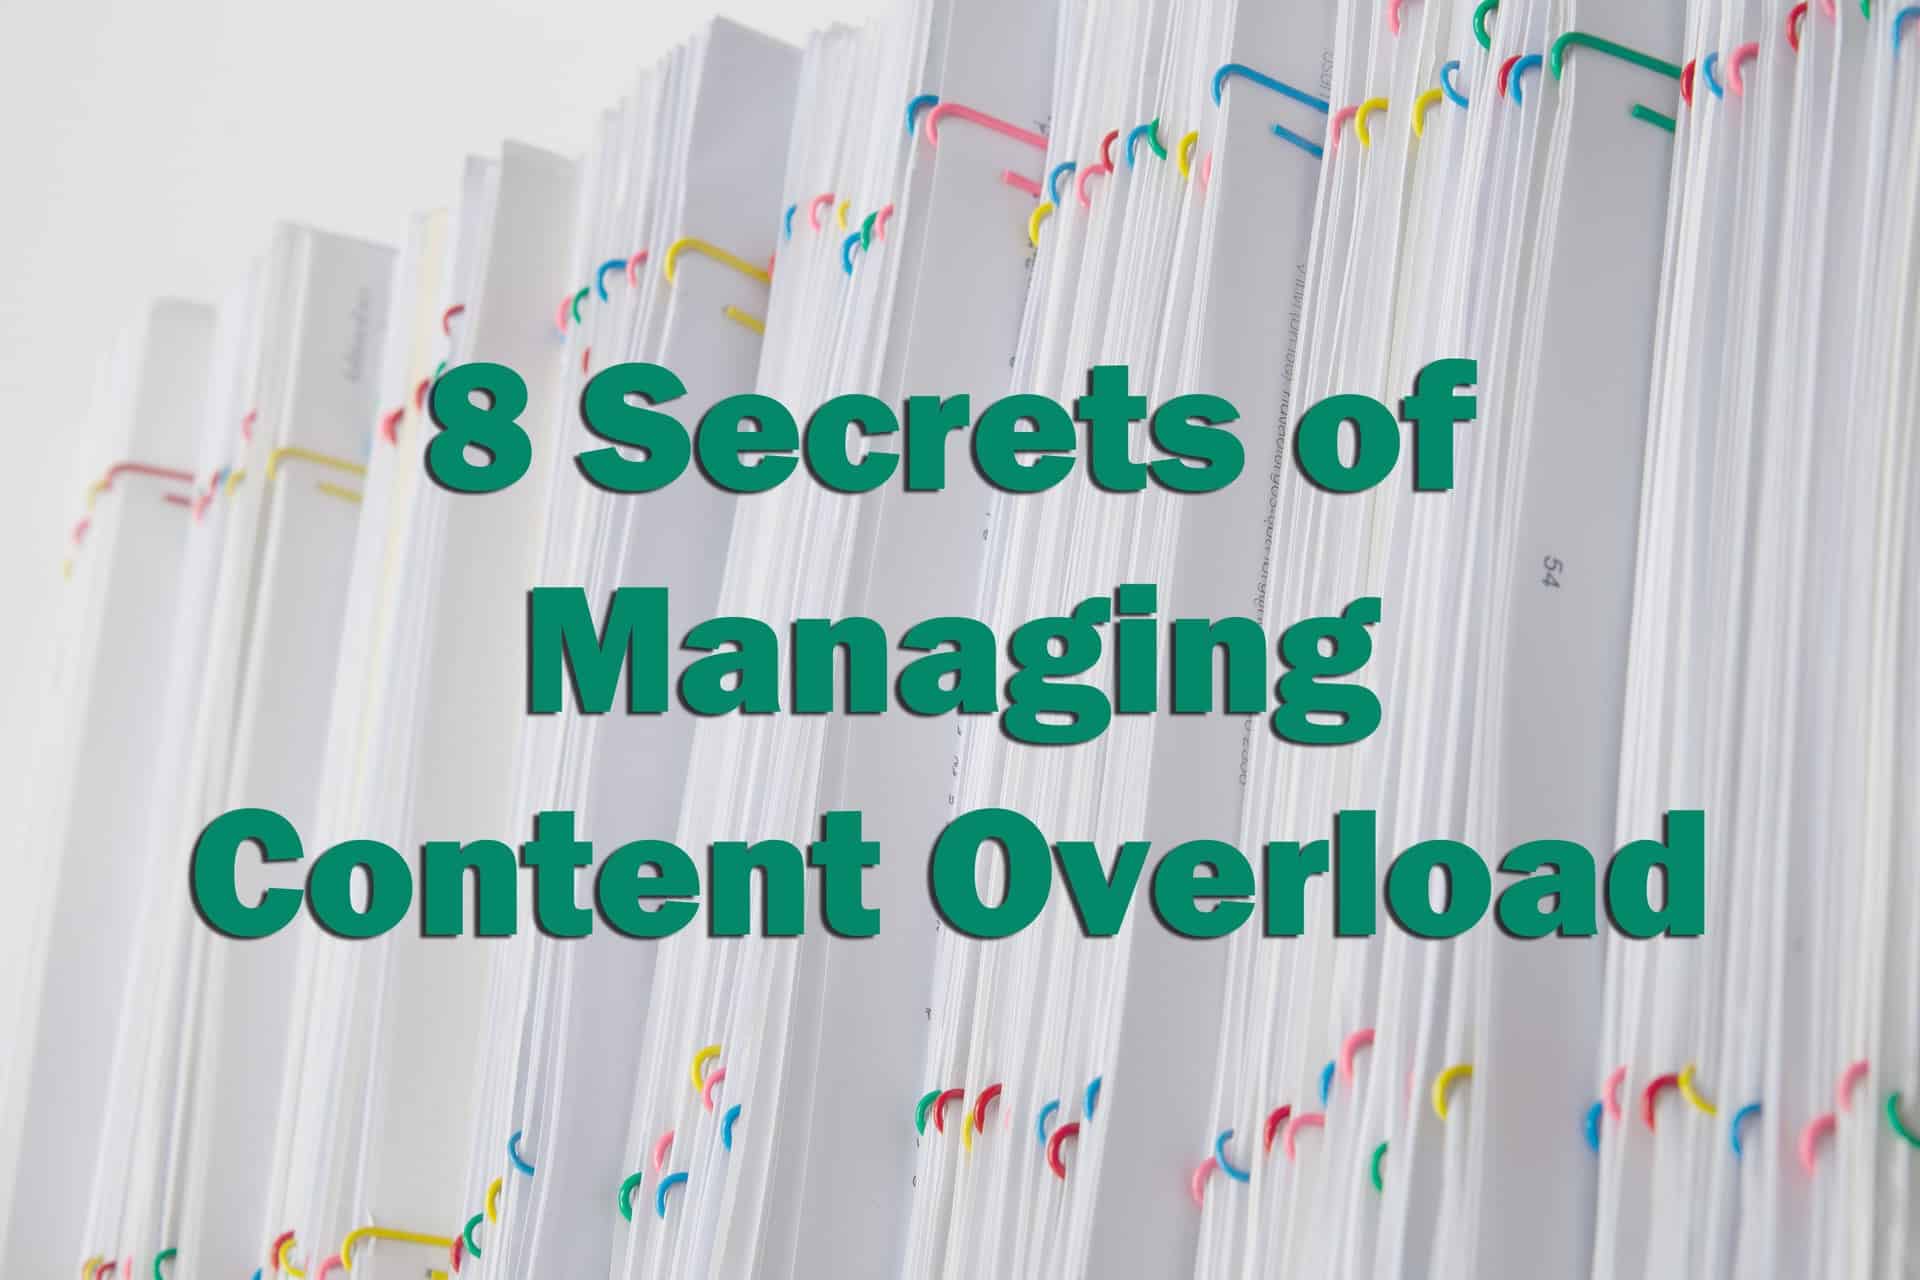 Managing Content Overload